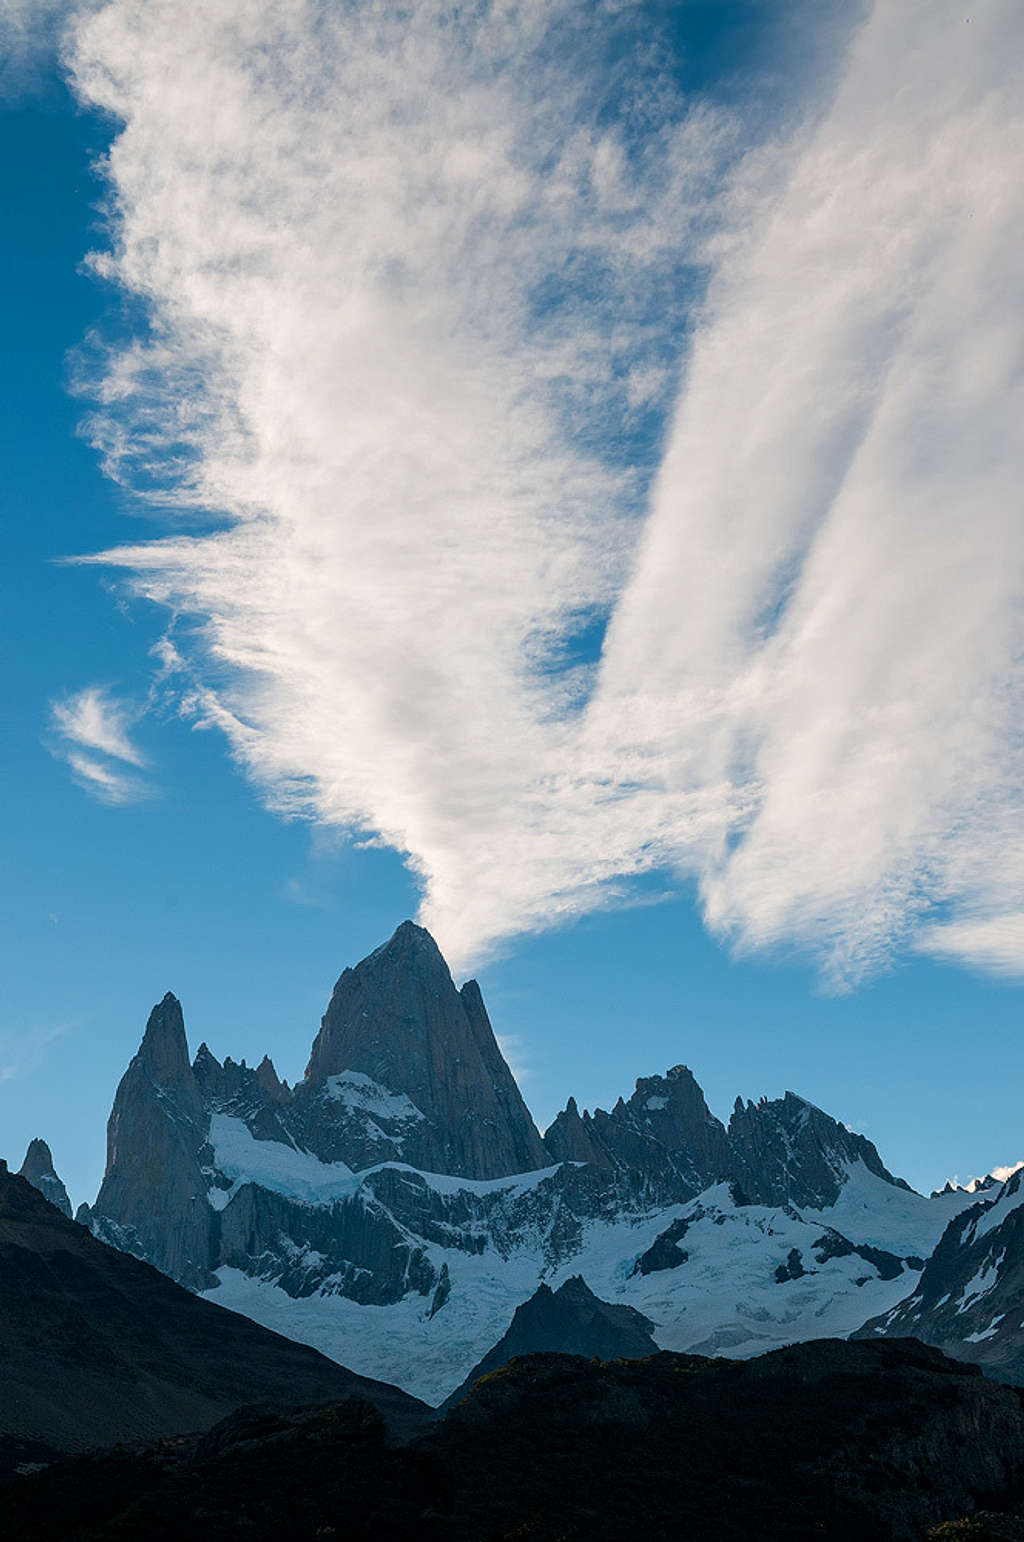 Cerro Chaltén - the mountain that smoke -Tehuelche name